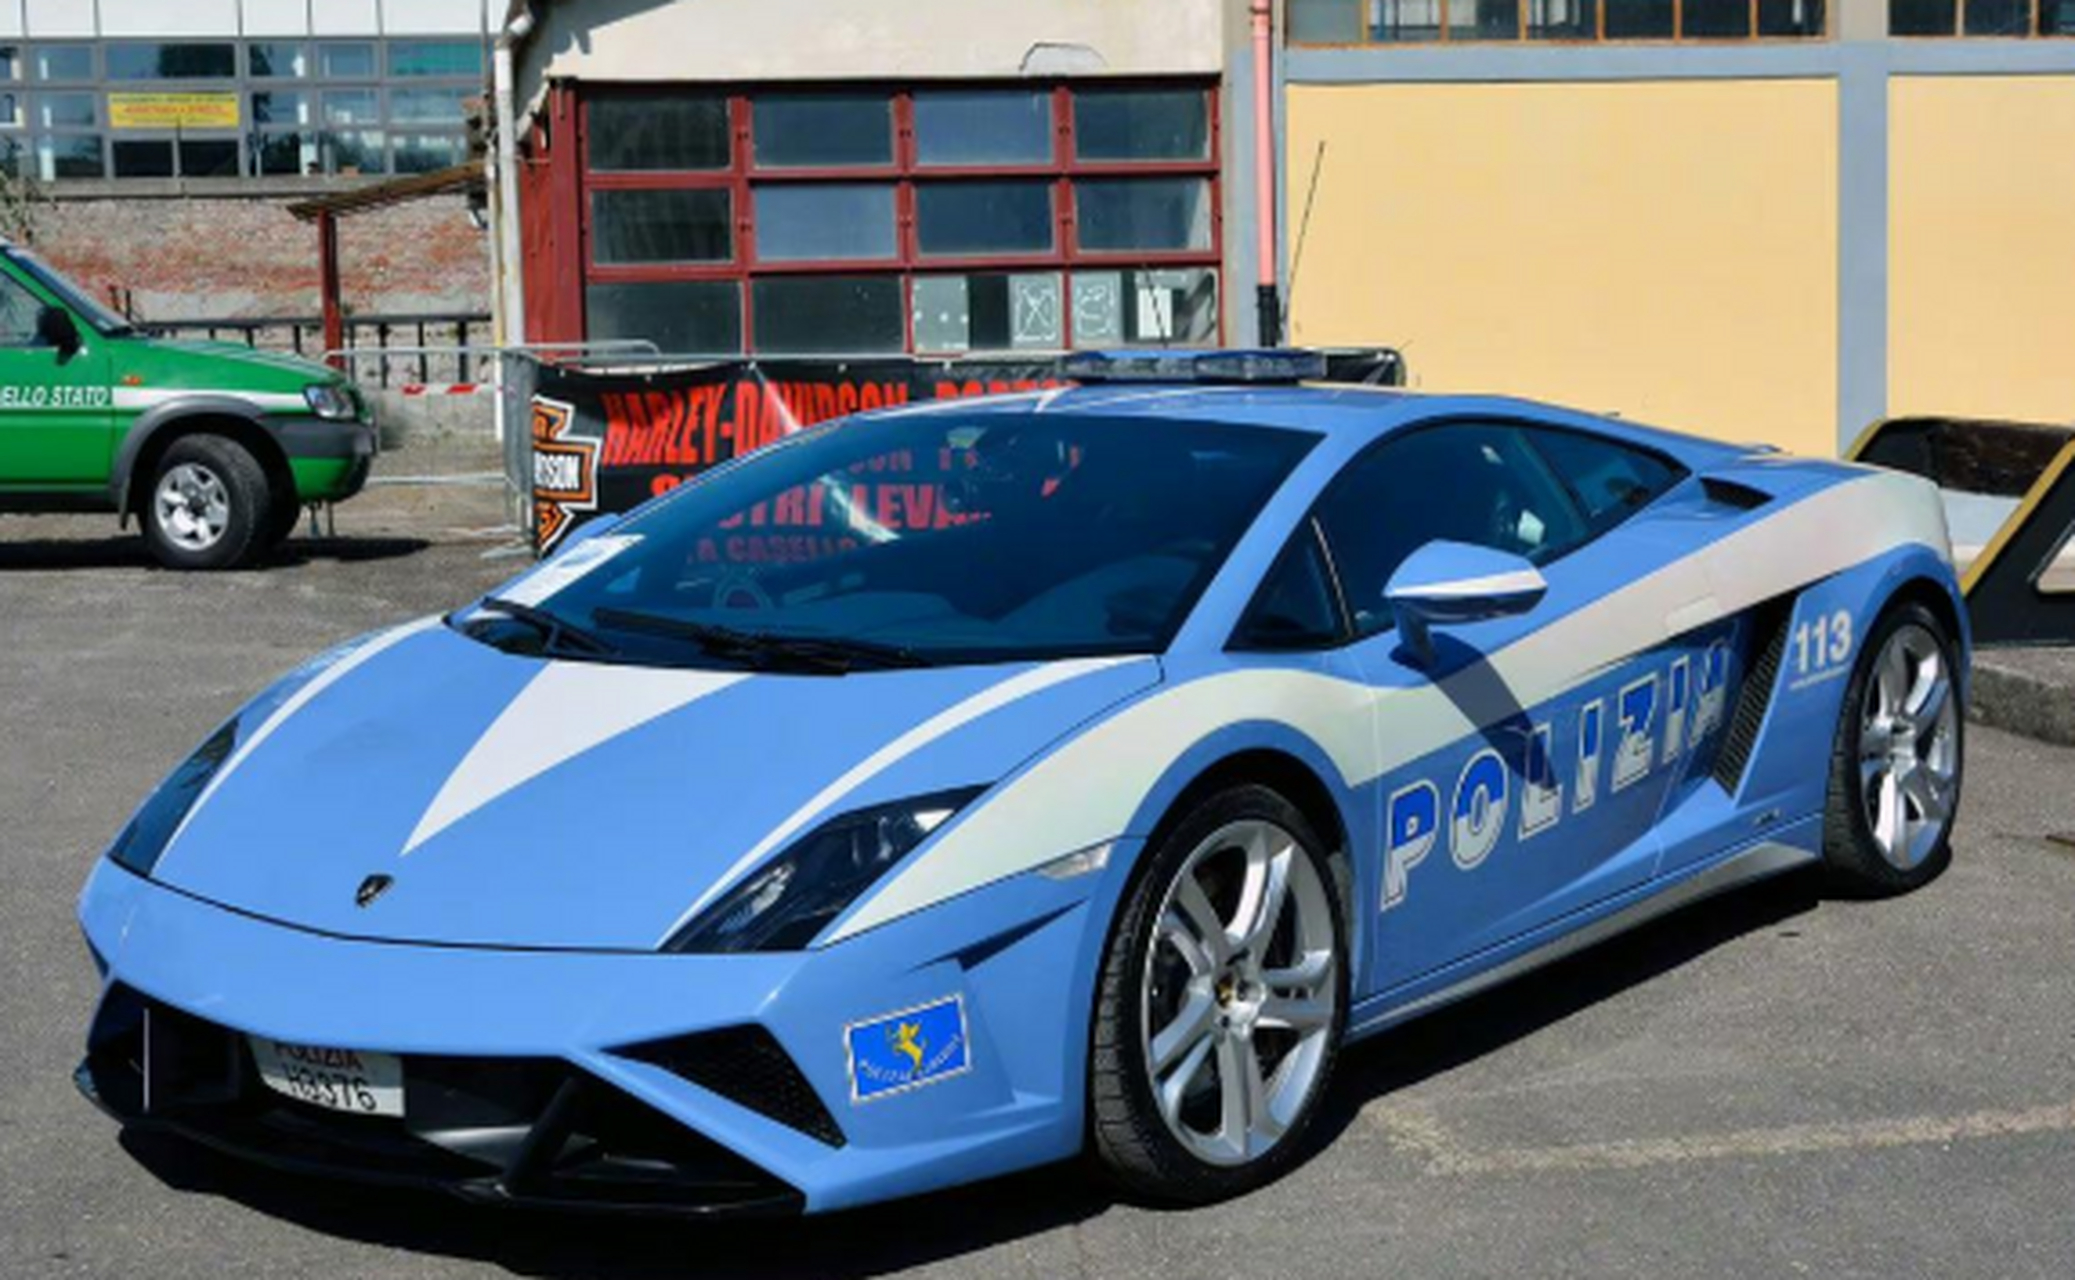 意大利警察部队这些年获赠的兰博基尼警车!